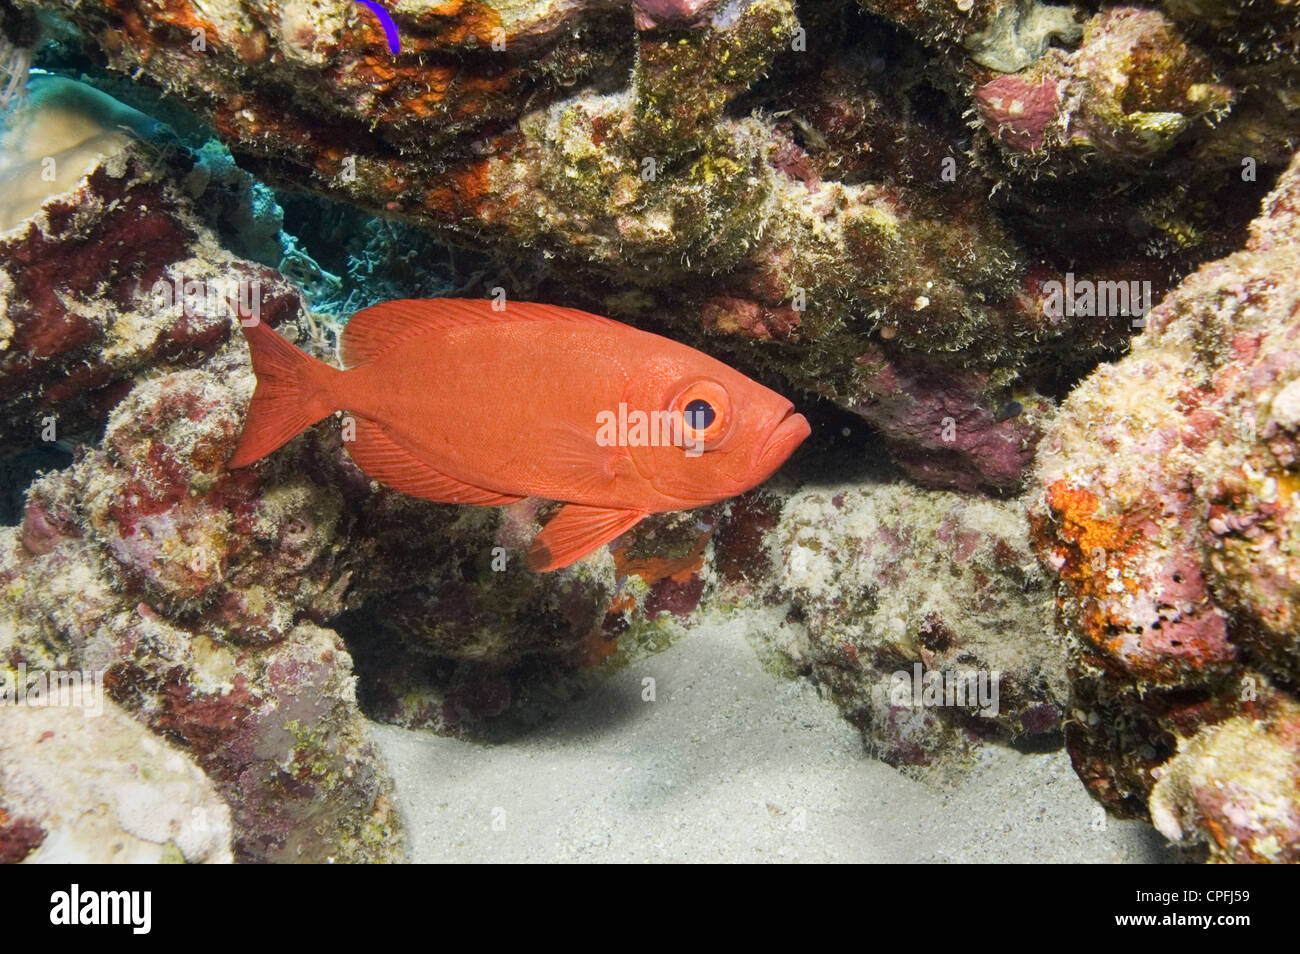 Big eye (Priacanthus hamrur) among coral rocks and sandy bottom, Egyptian Red Sea 28-9-07 Stock Photo